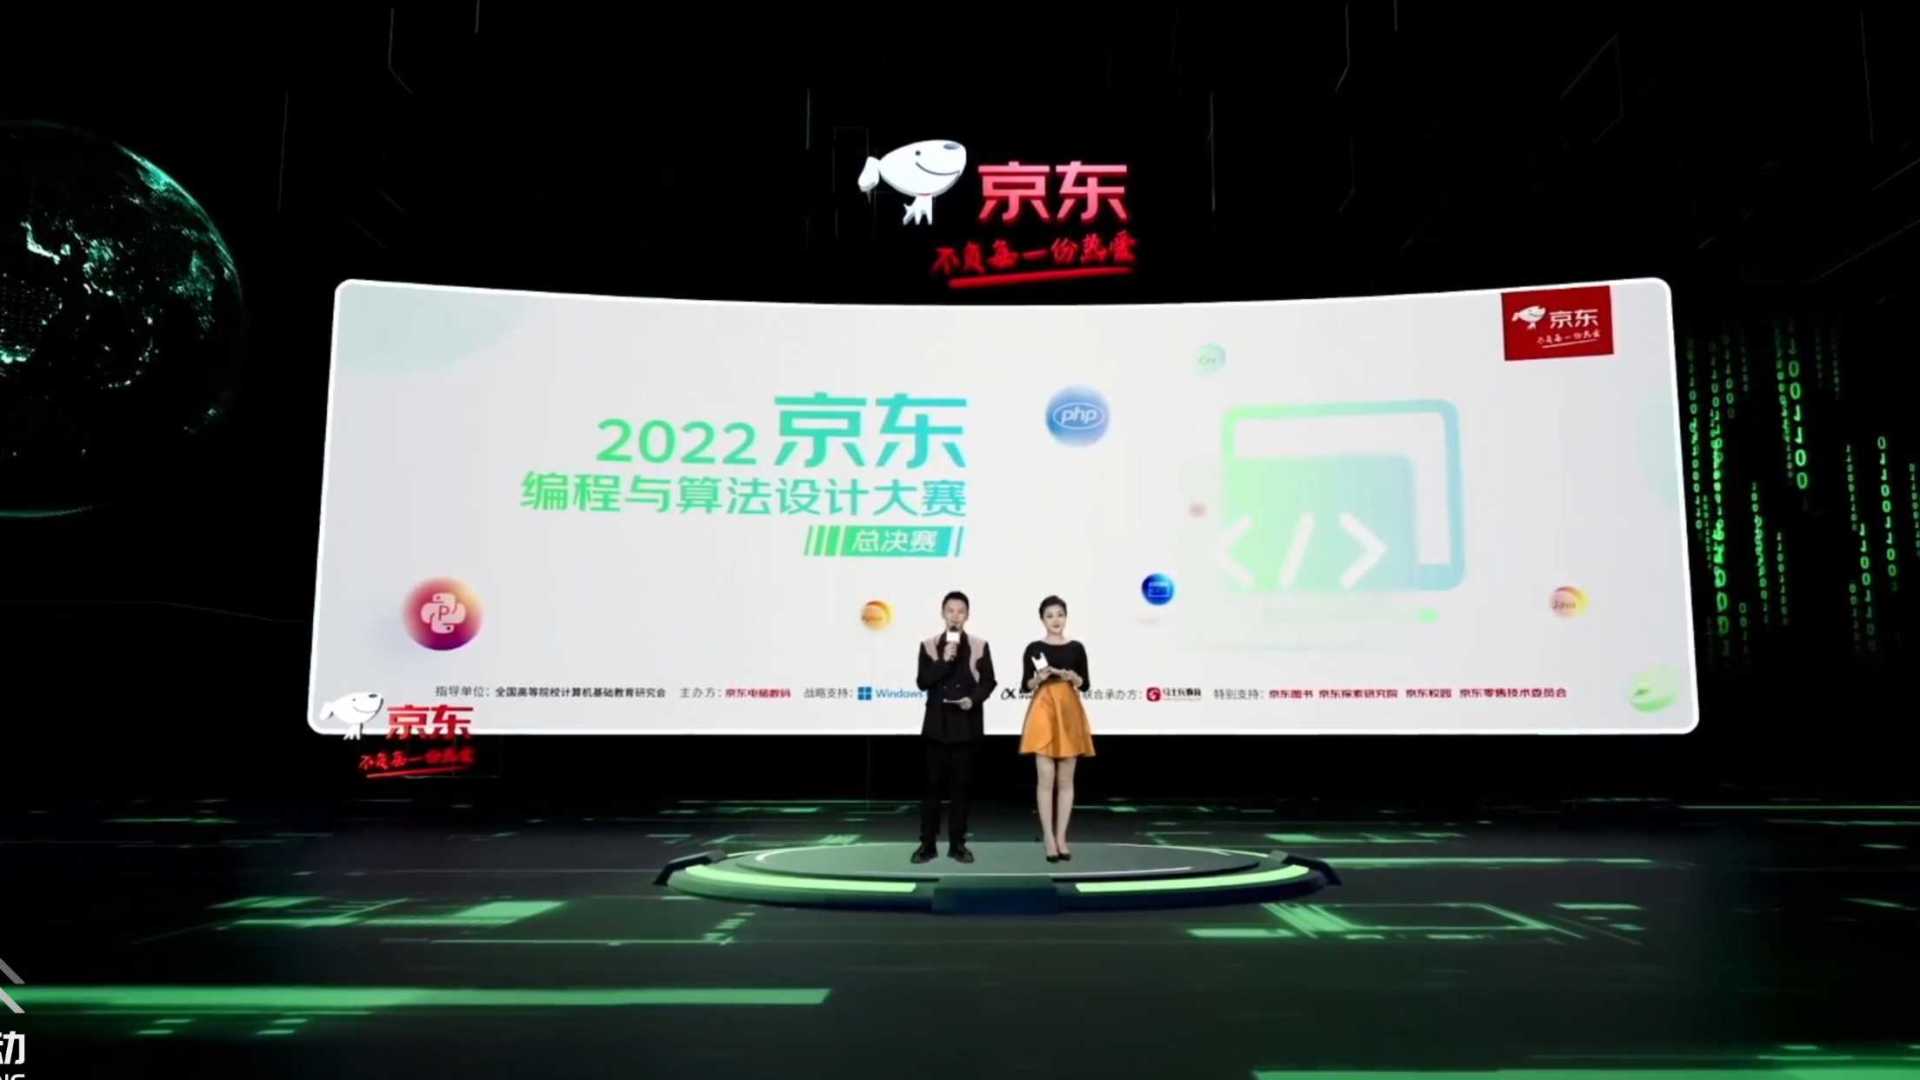 京东2022编程与算法设计大赛线上虚拟直播，线上发布会，现场实时虚拟直播